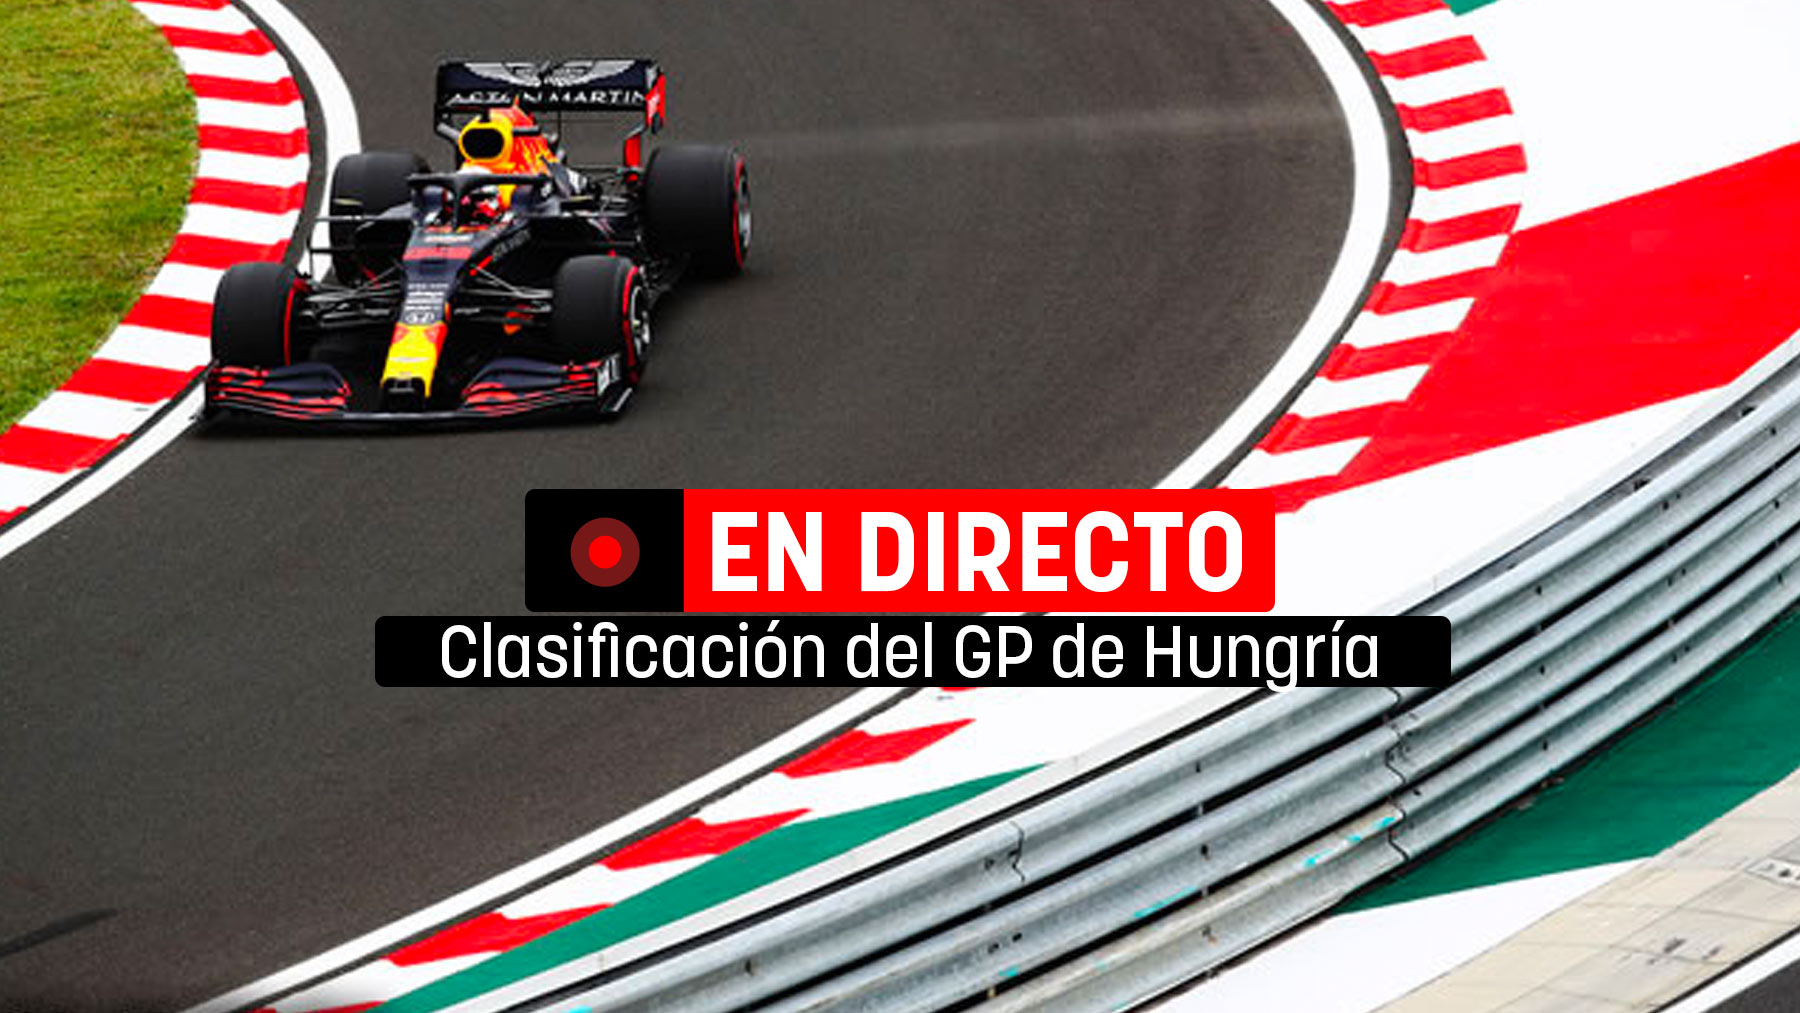 Clasificación del GP de Hungría de F1 en directo | Última hora de la Fórmula 1 en vivo online.